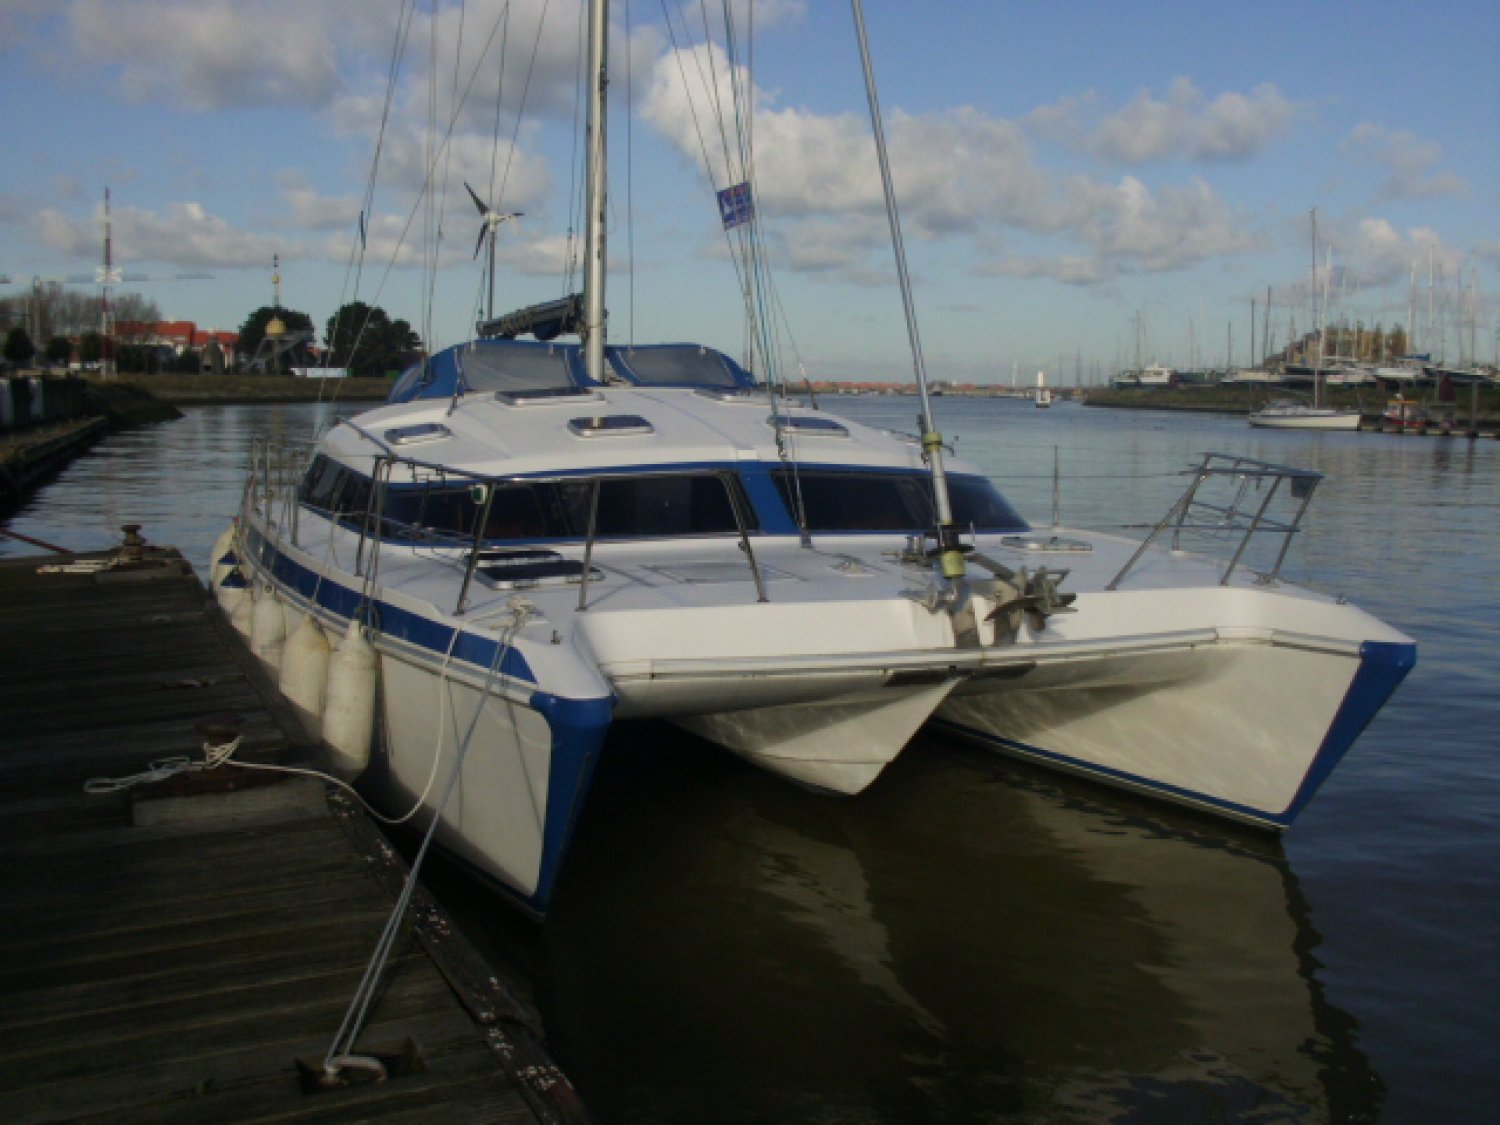 39 ft catamaran for sale